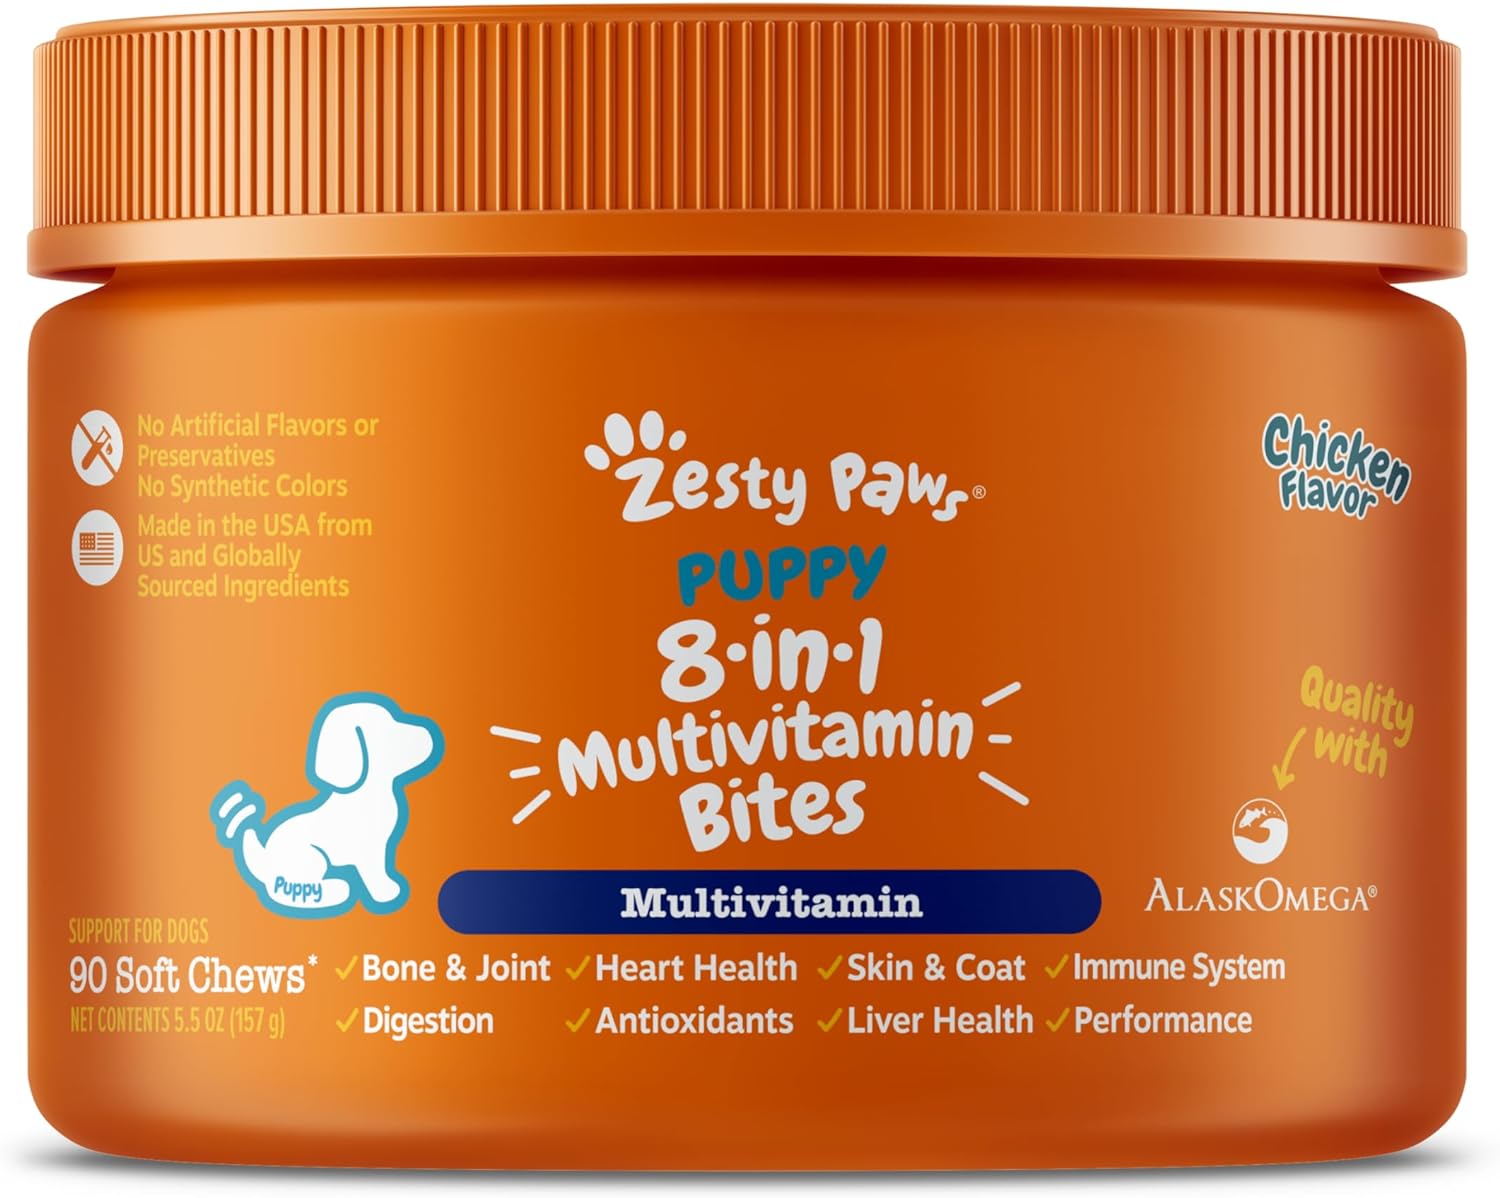 Puppy 8-in-1 Multivitamin Bites